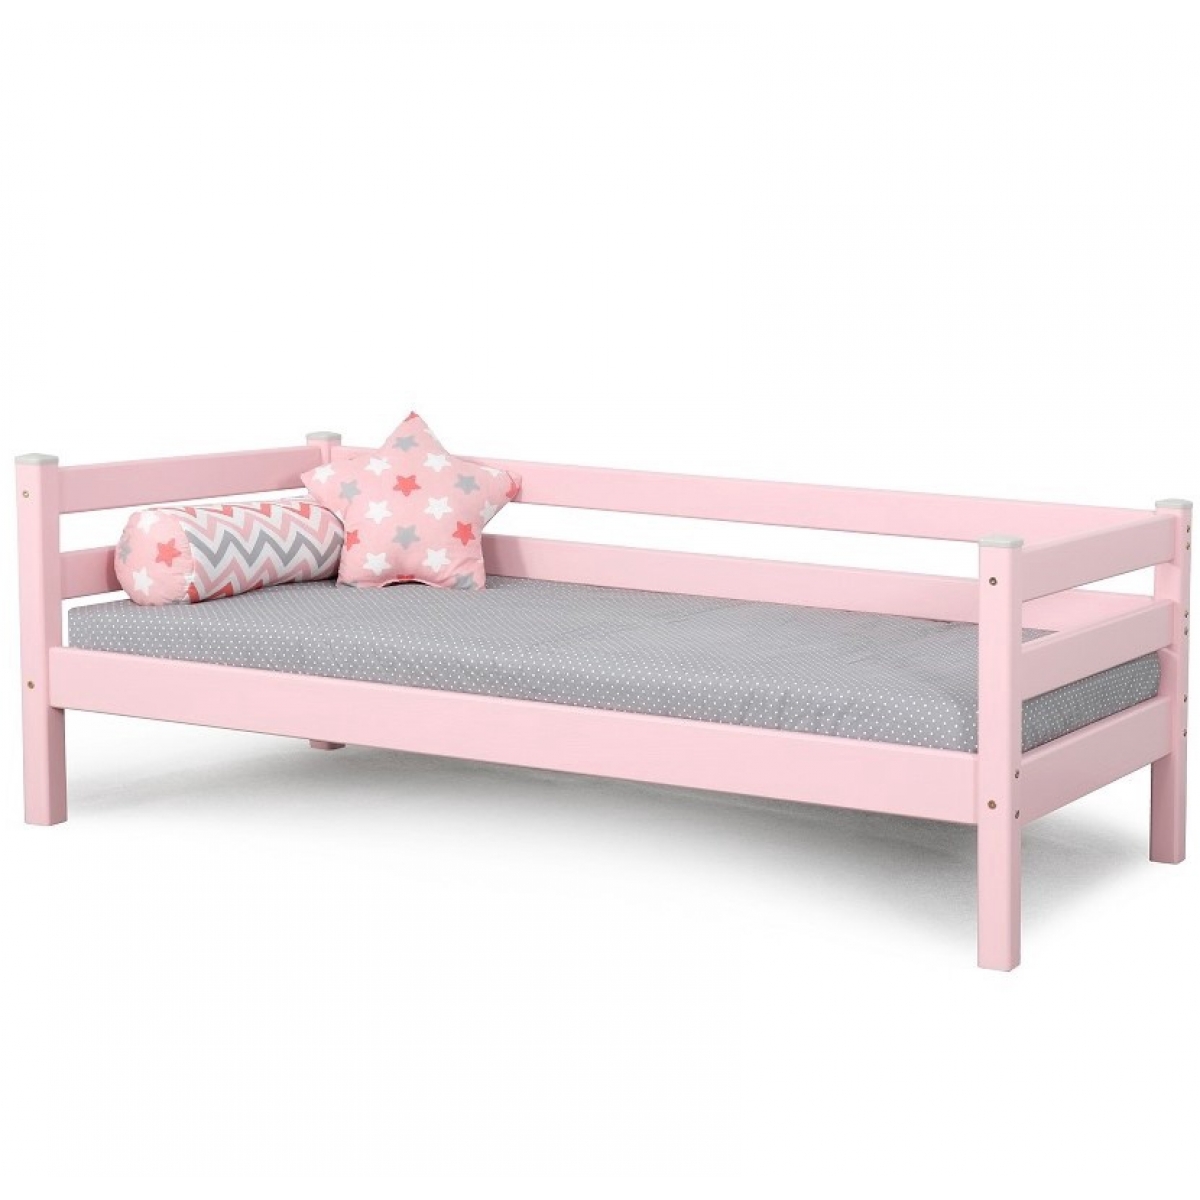 Кровать Соня Вариант 2 с задней защитой 190х80 (розовая)